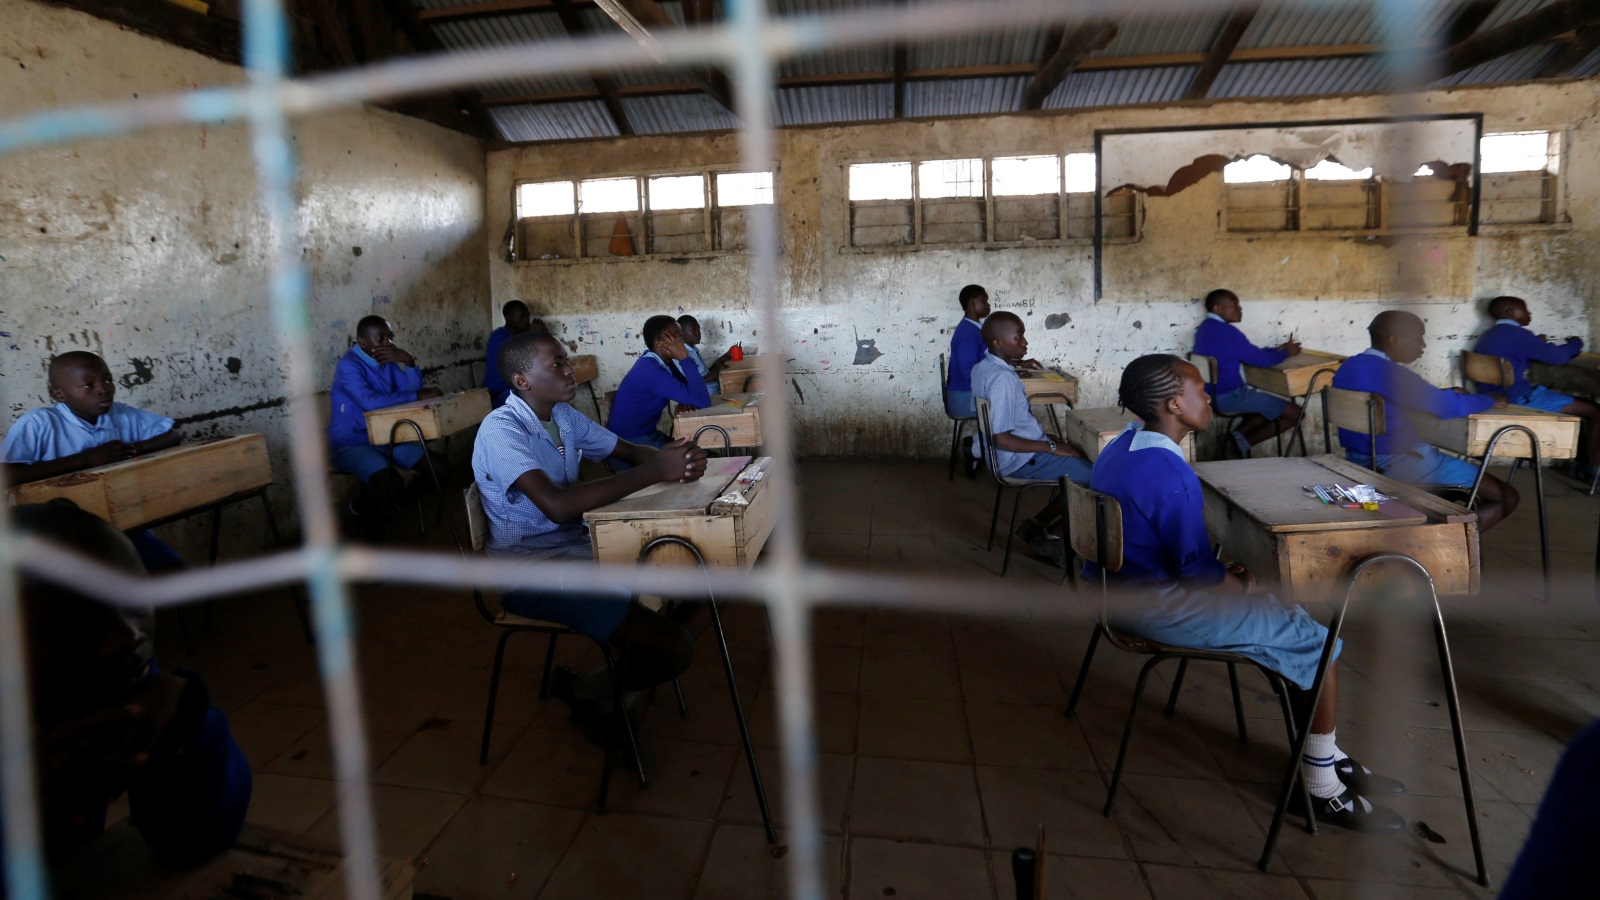 مدرسة ثانوية في كينيا ويبدو واضحا مدى السوء الذي تعانيه نتيجة ضعف التمويل (رويترز)